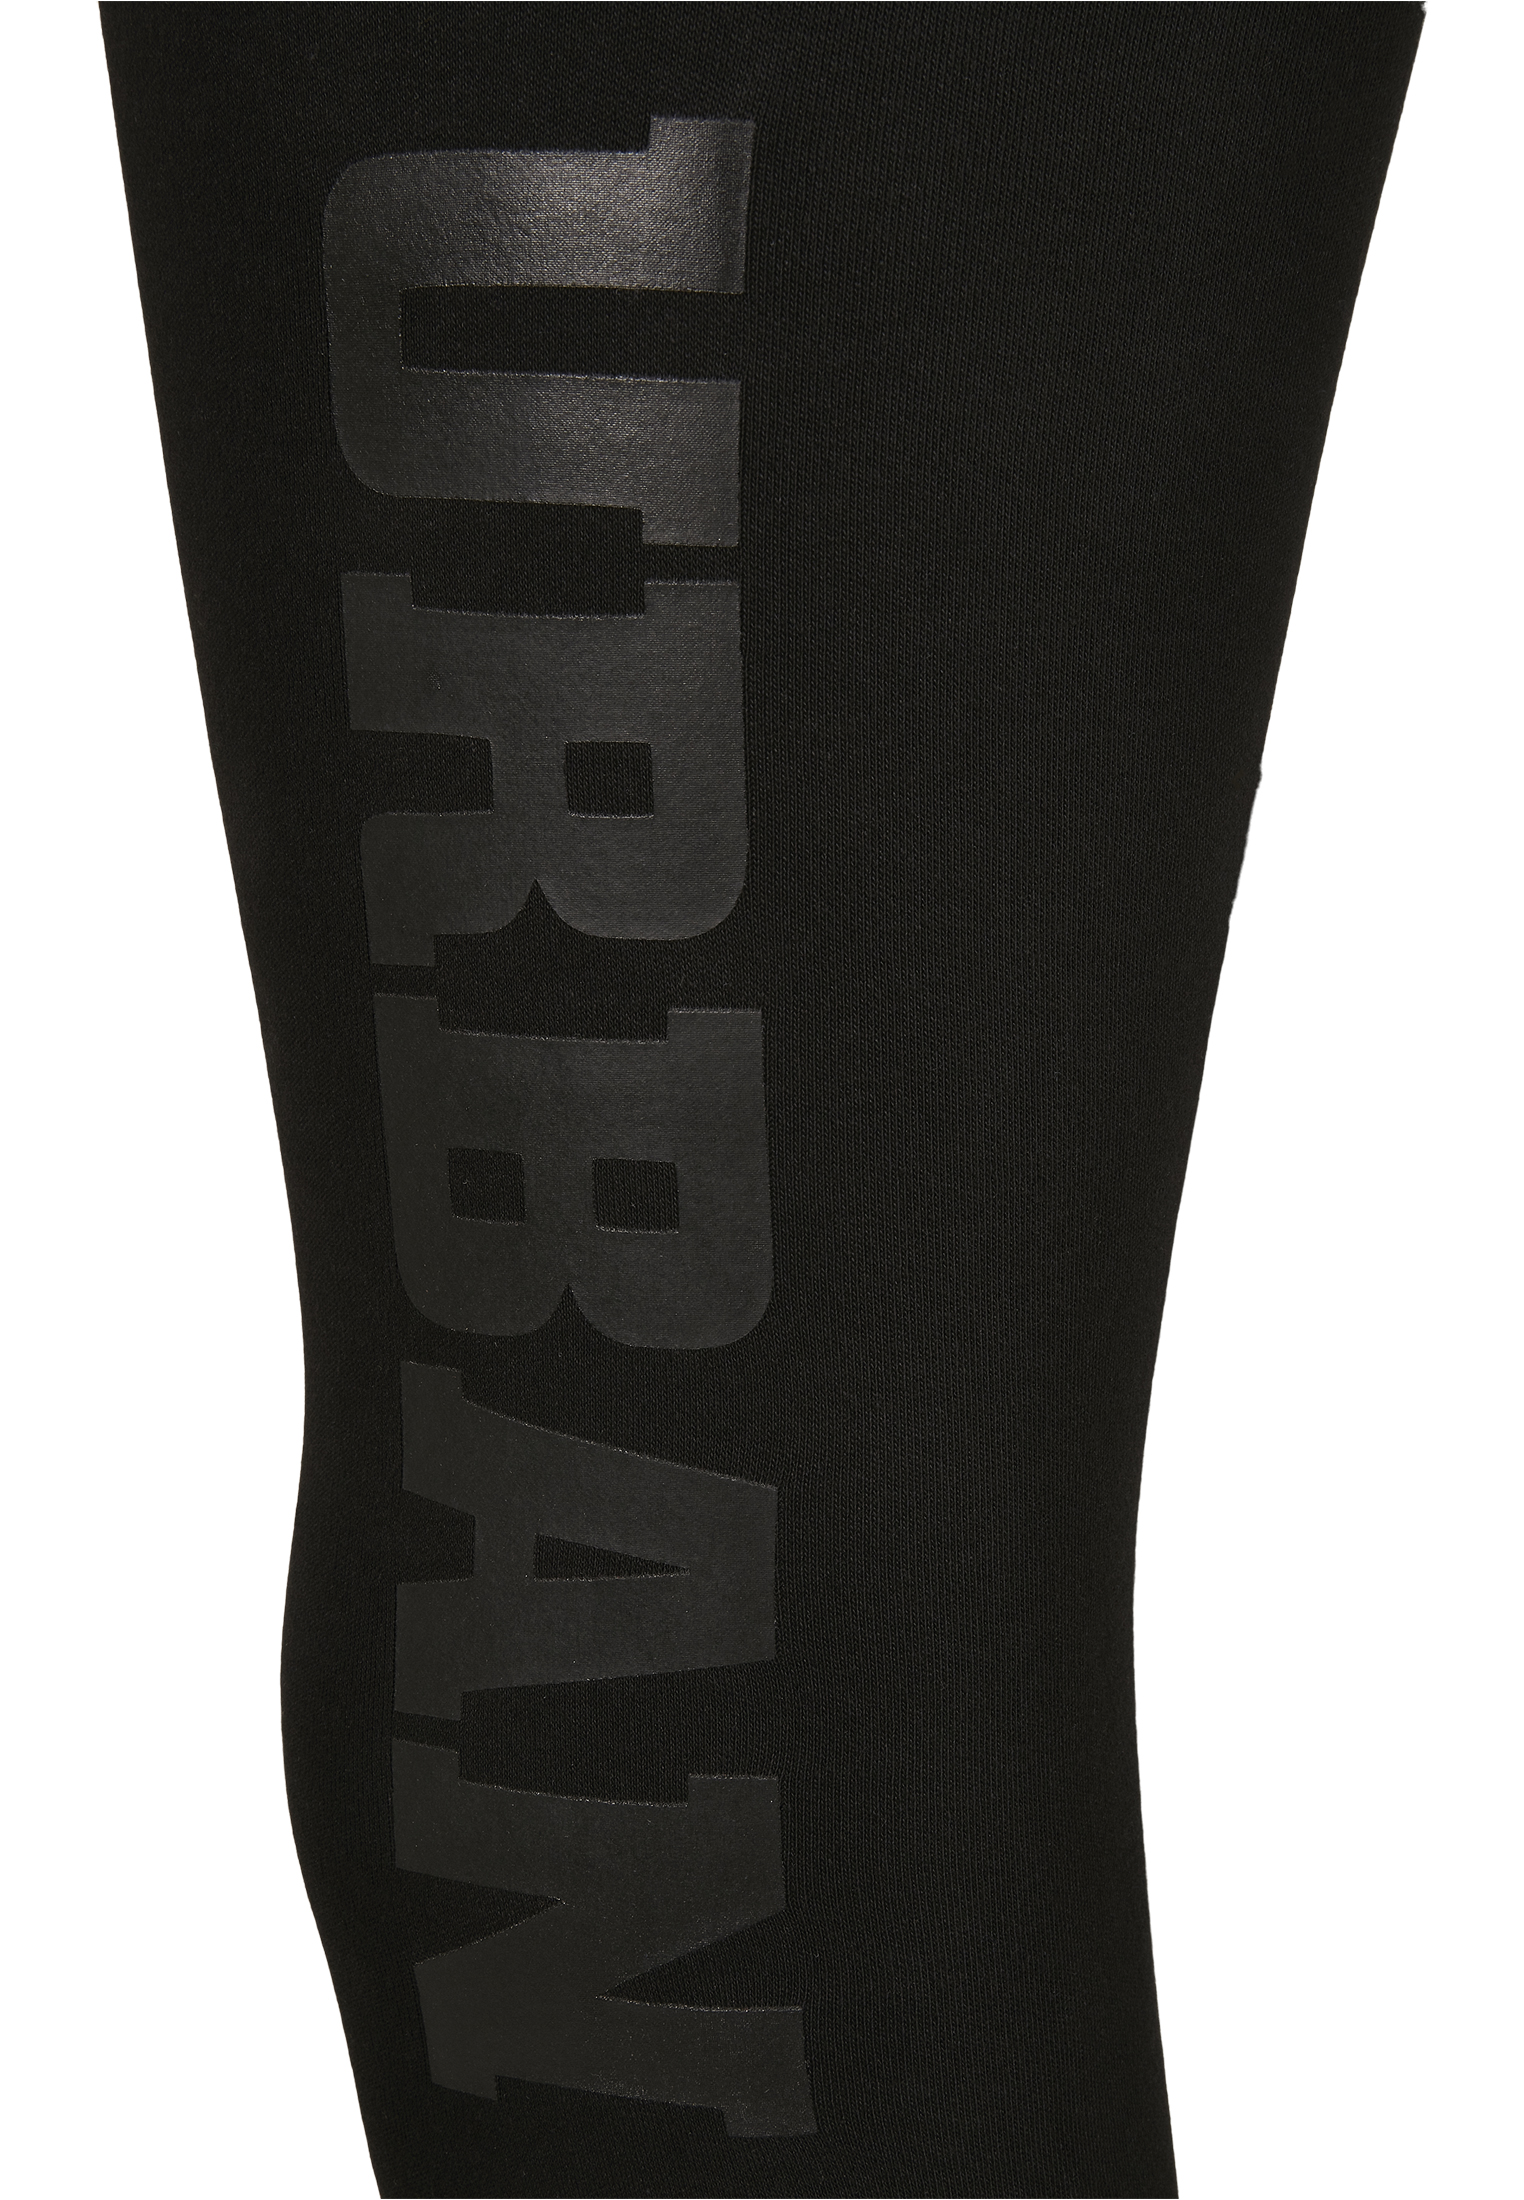 Curvy Ladies High Waist Branded Leggings in Farbe black/black